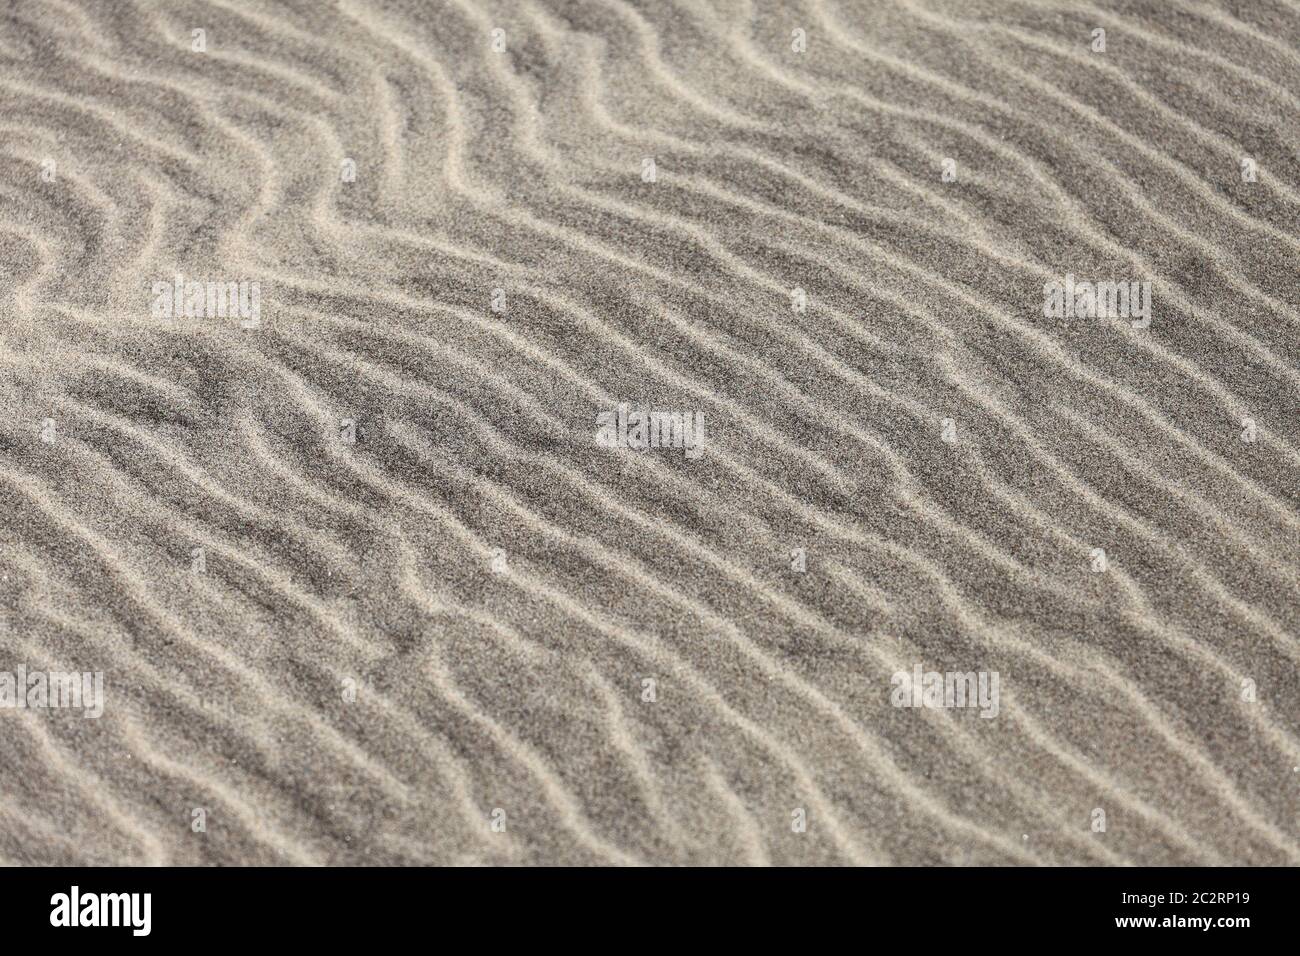 Patrón de ondulaciones como se ve en la arena en una playa. Foto de stock